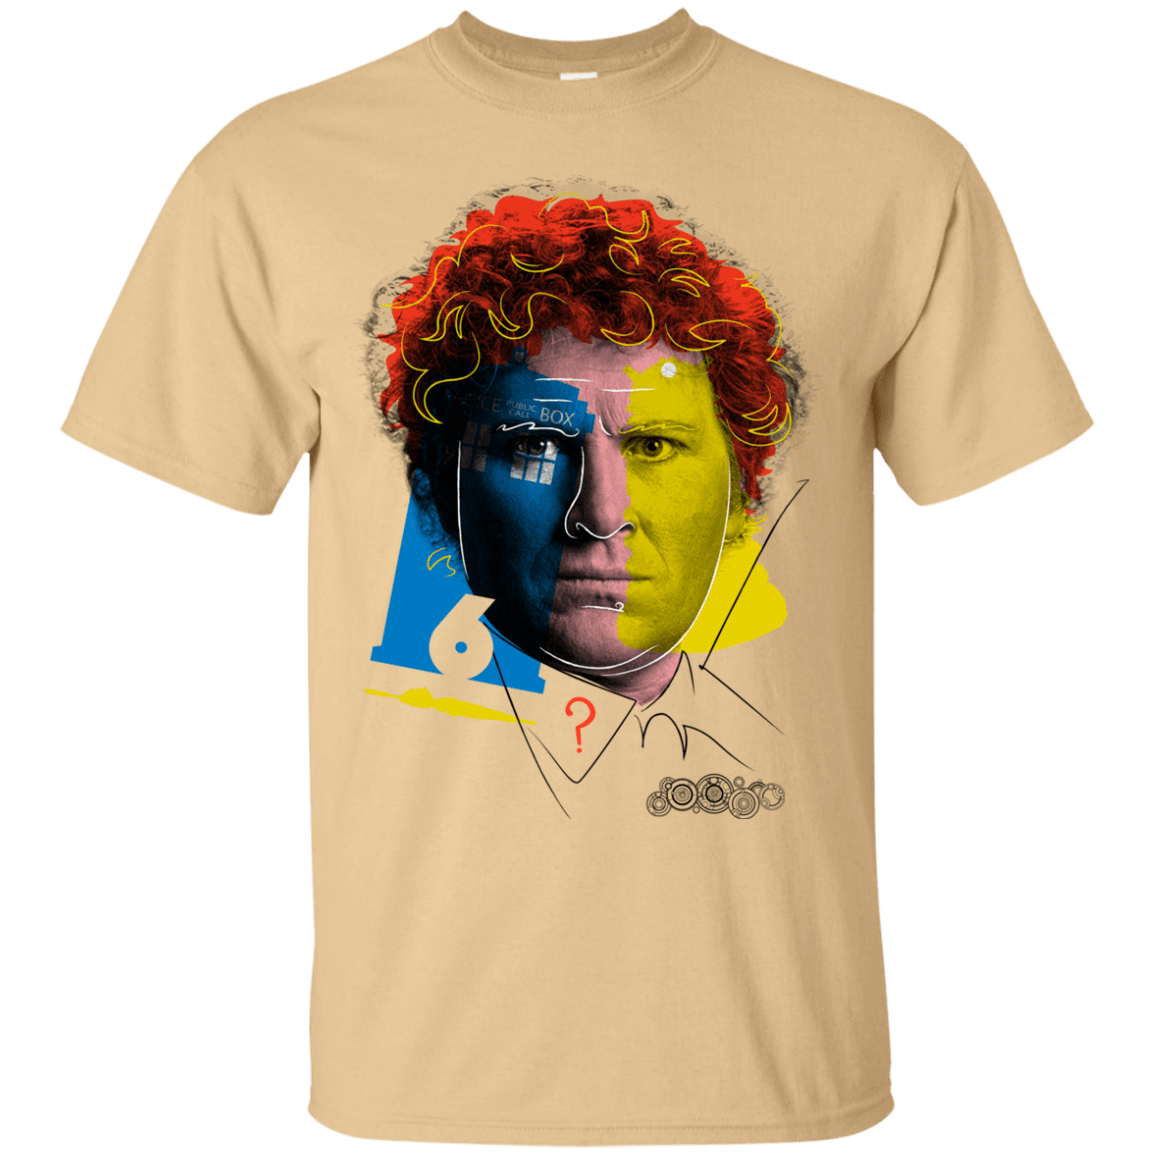 T-Shirts Vegas Gold / S Doctor Warwhol 6 T-Shirt